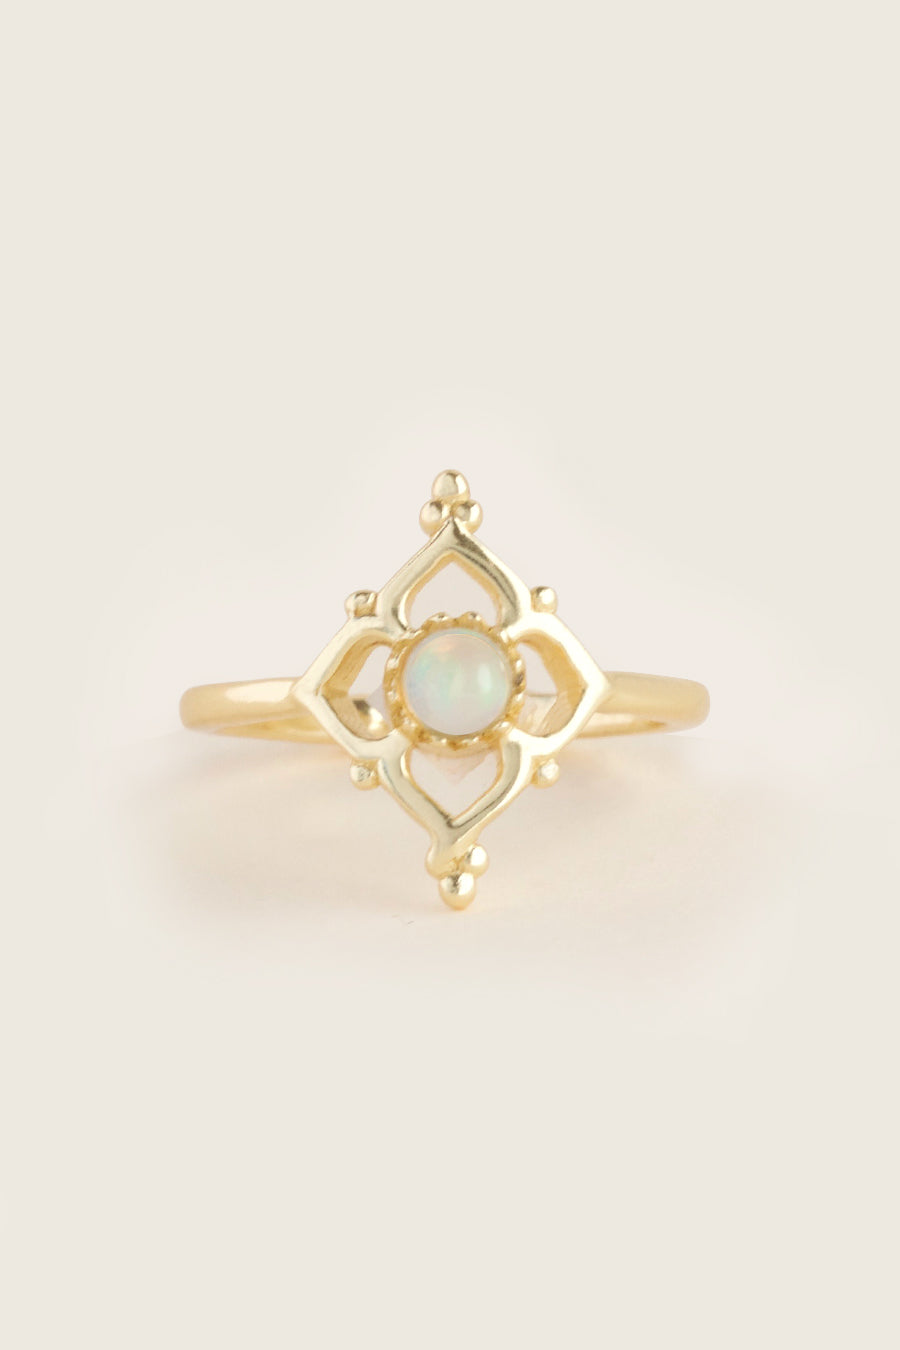 gold opal ring flower pattern